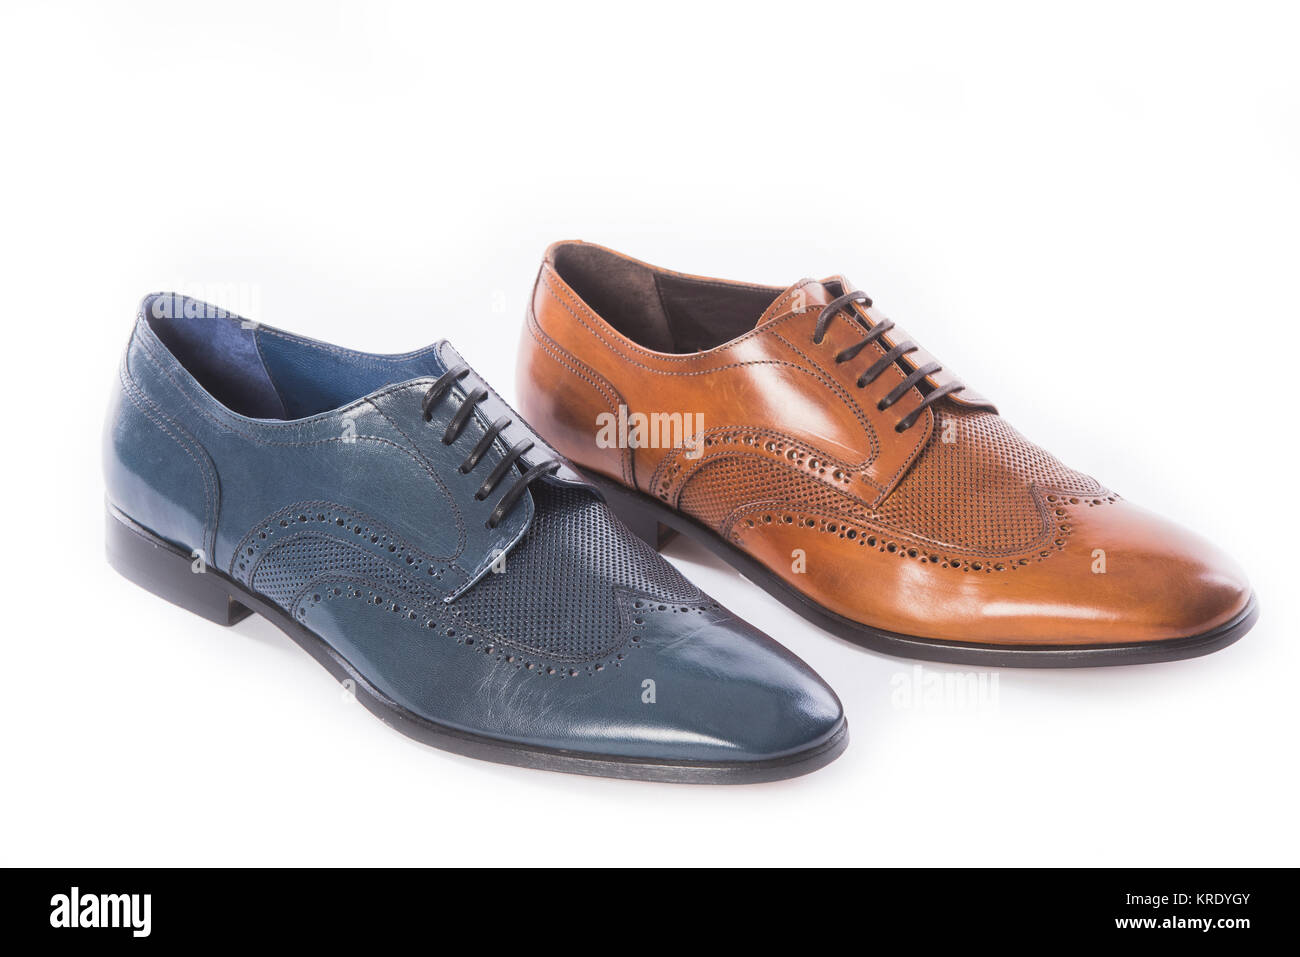 Collection Chaussures hommes - chaussures de couleurs différentes sur un fond blanc Banque D'Images